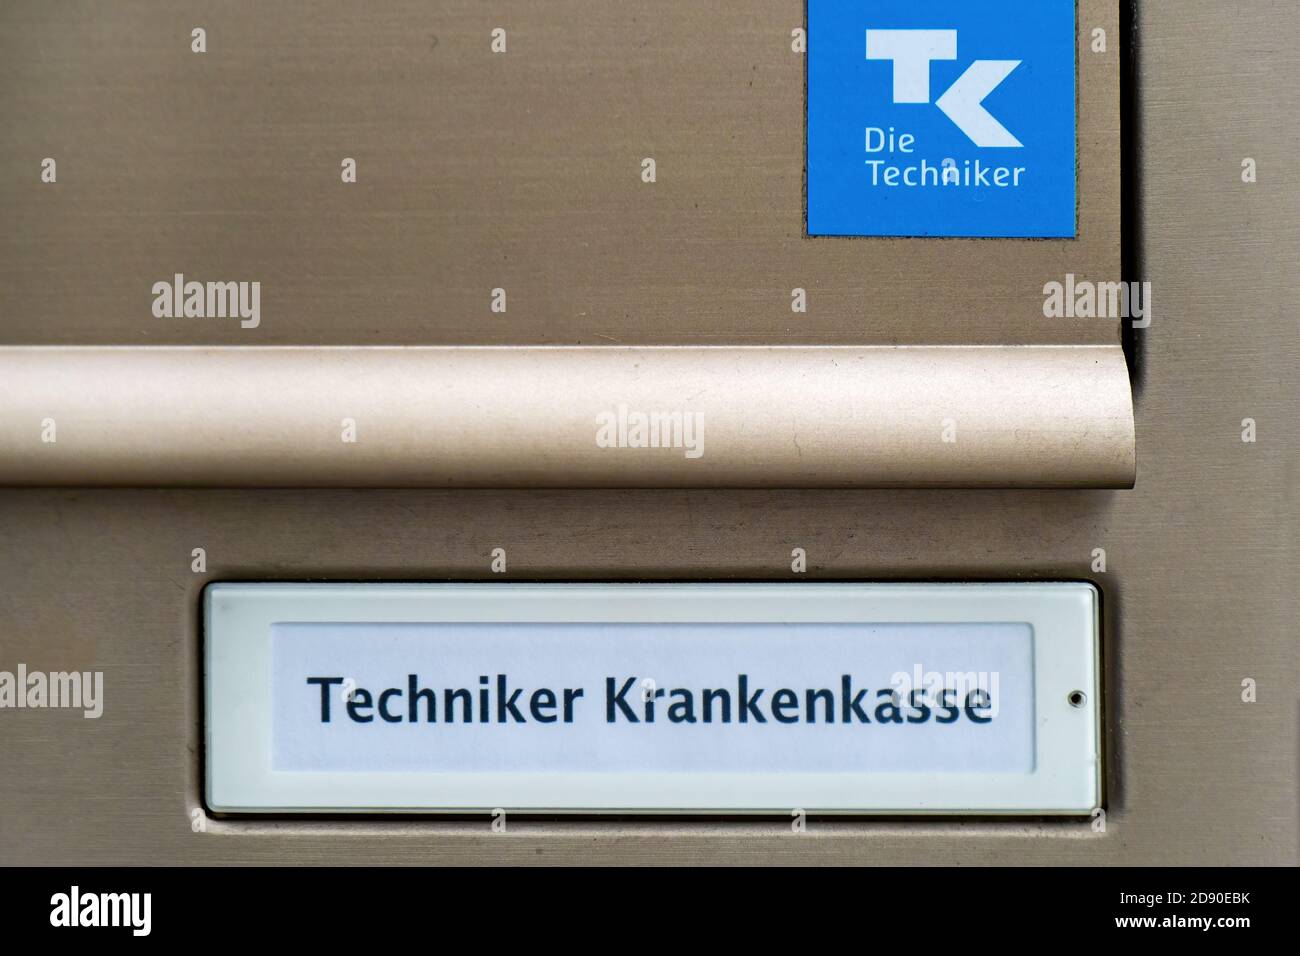 Sign of the health Insurance Techniker Krankenkasse - TK - Die Techniker in Stuttgart, Germany Stock Photo